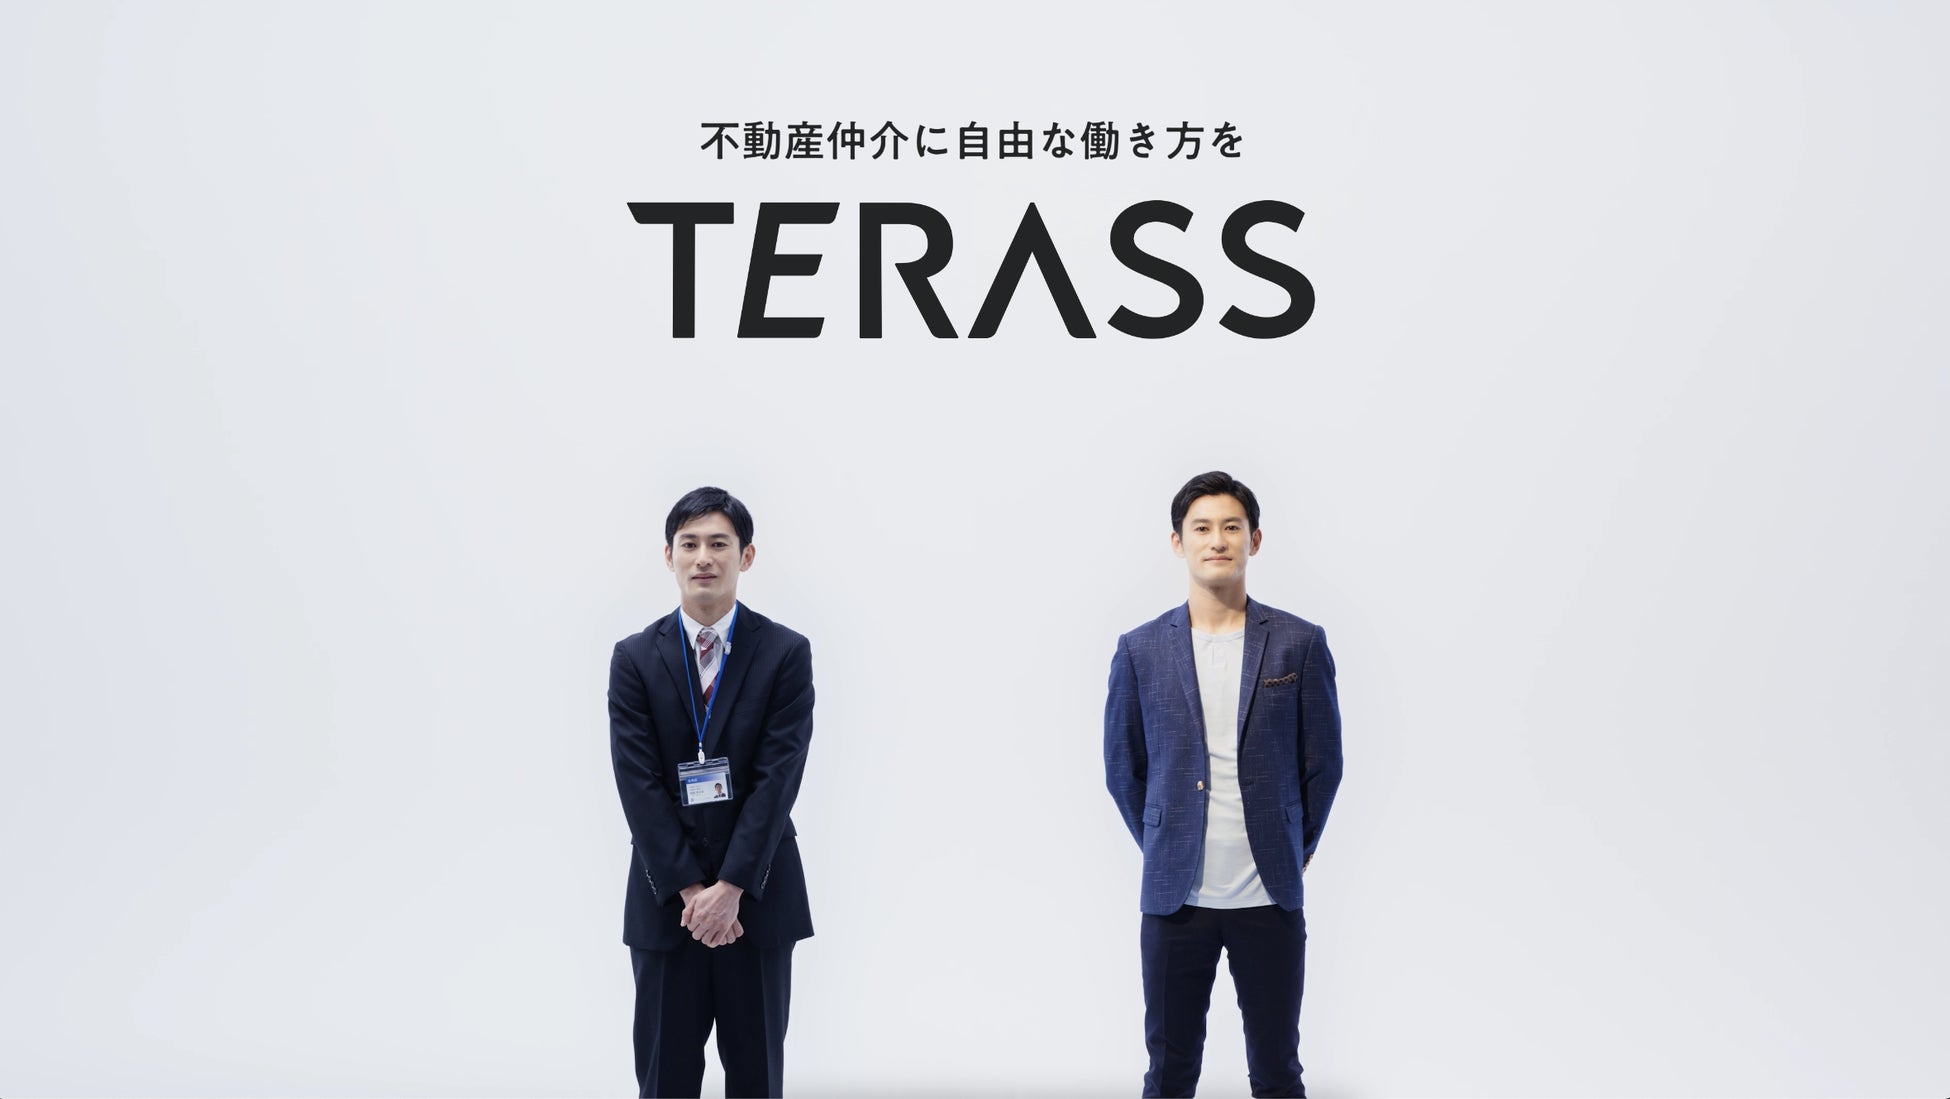 プロフェッショナルが集まる、次世代不動産エージェントファーム「TERASS」初のWebCMが公開。Terass Agentたちの自由な働き方を表現のサブ画像1